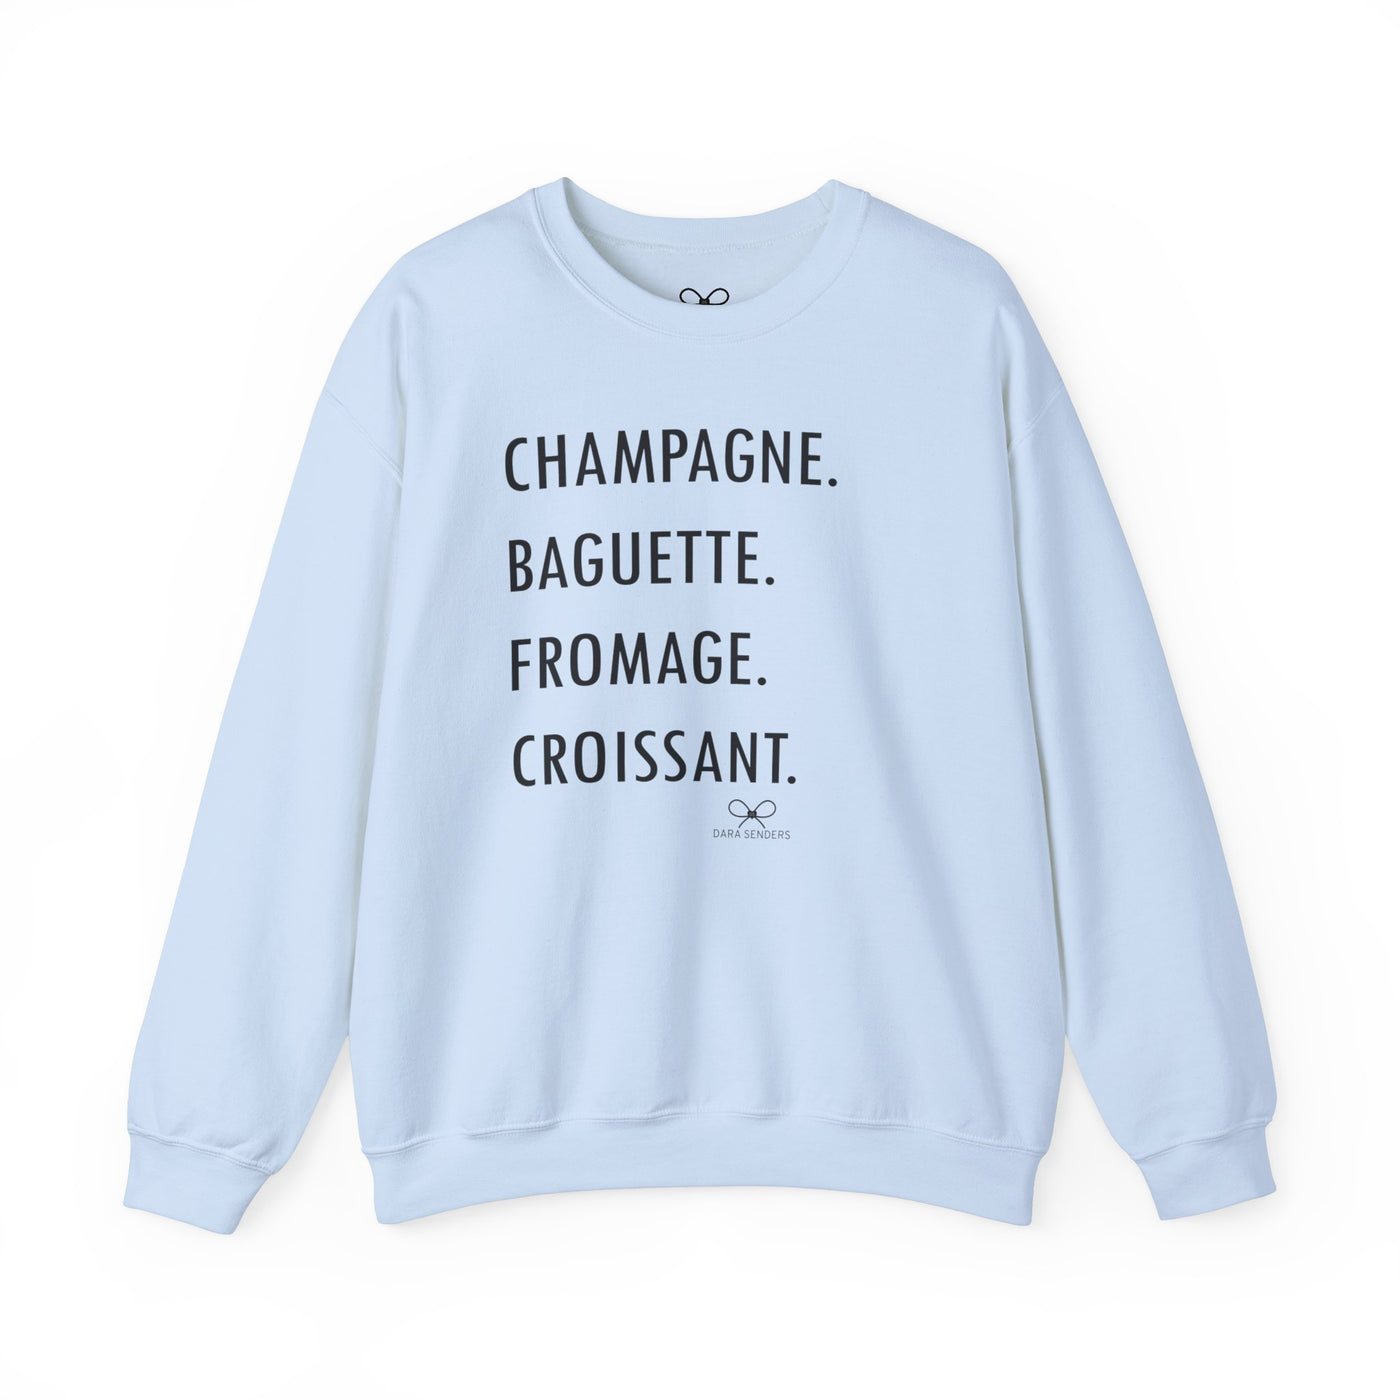 GOURMET LOVE (Champagne, Baguette, Fromage, Croissant) Crewneck Sweatshirt